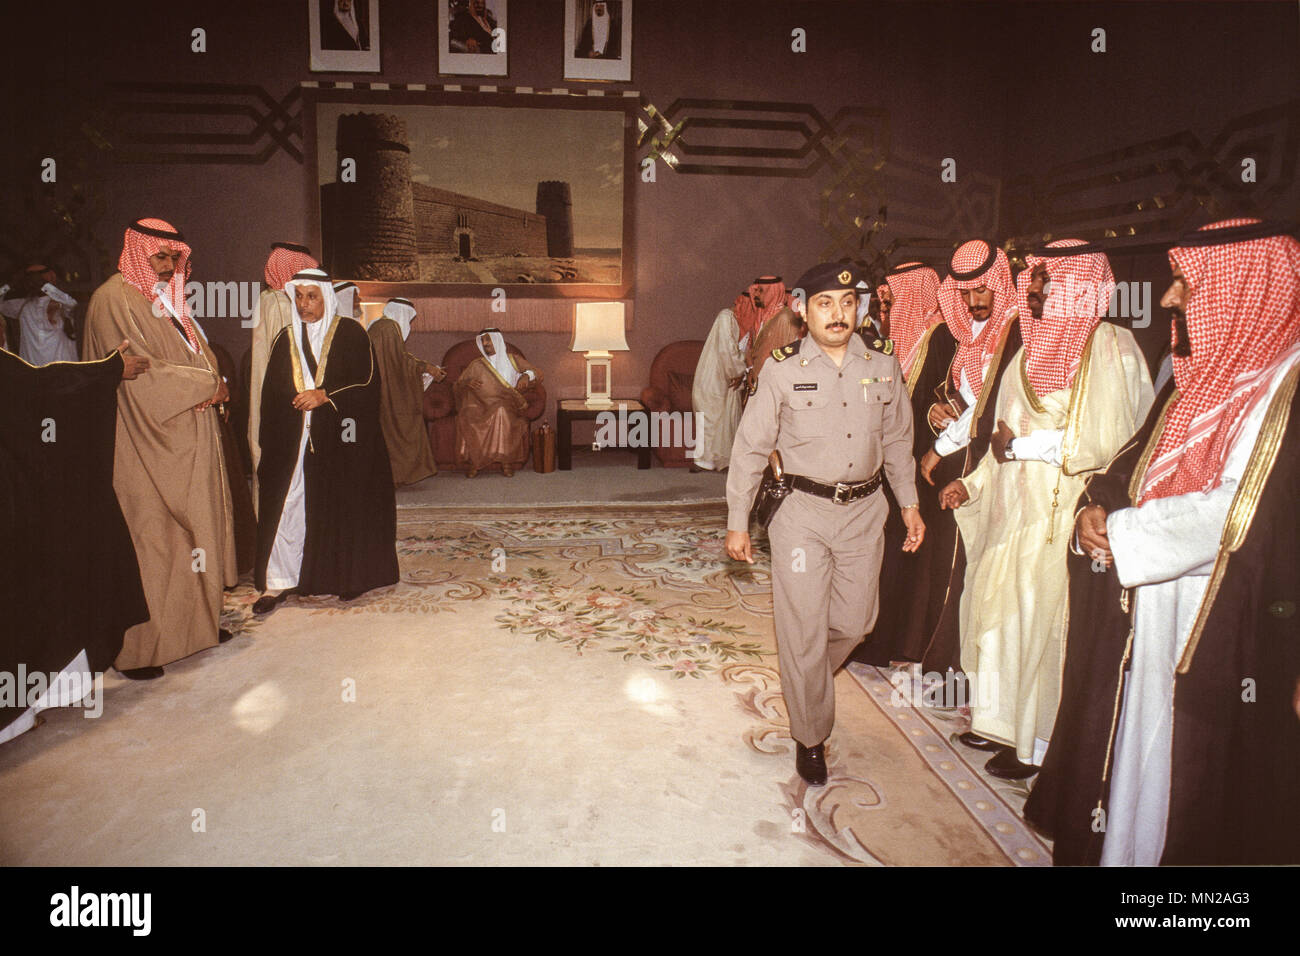 Herrscher des saudiarabischen König Salman, während noch Gouverneur oder Riad Provinz, in seinem Palast in Riad in 1991 Generalaudienz mit saudischer Bürger. Prinz Salman gelang es König Abdullah auf den Thron am 22. Januar 2015. Stockfoto